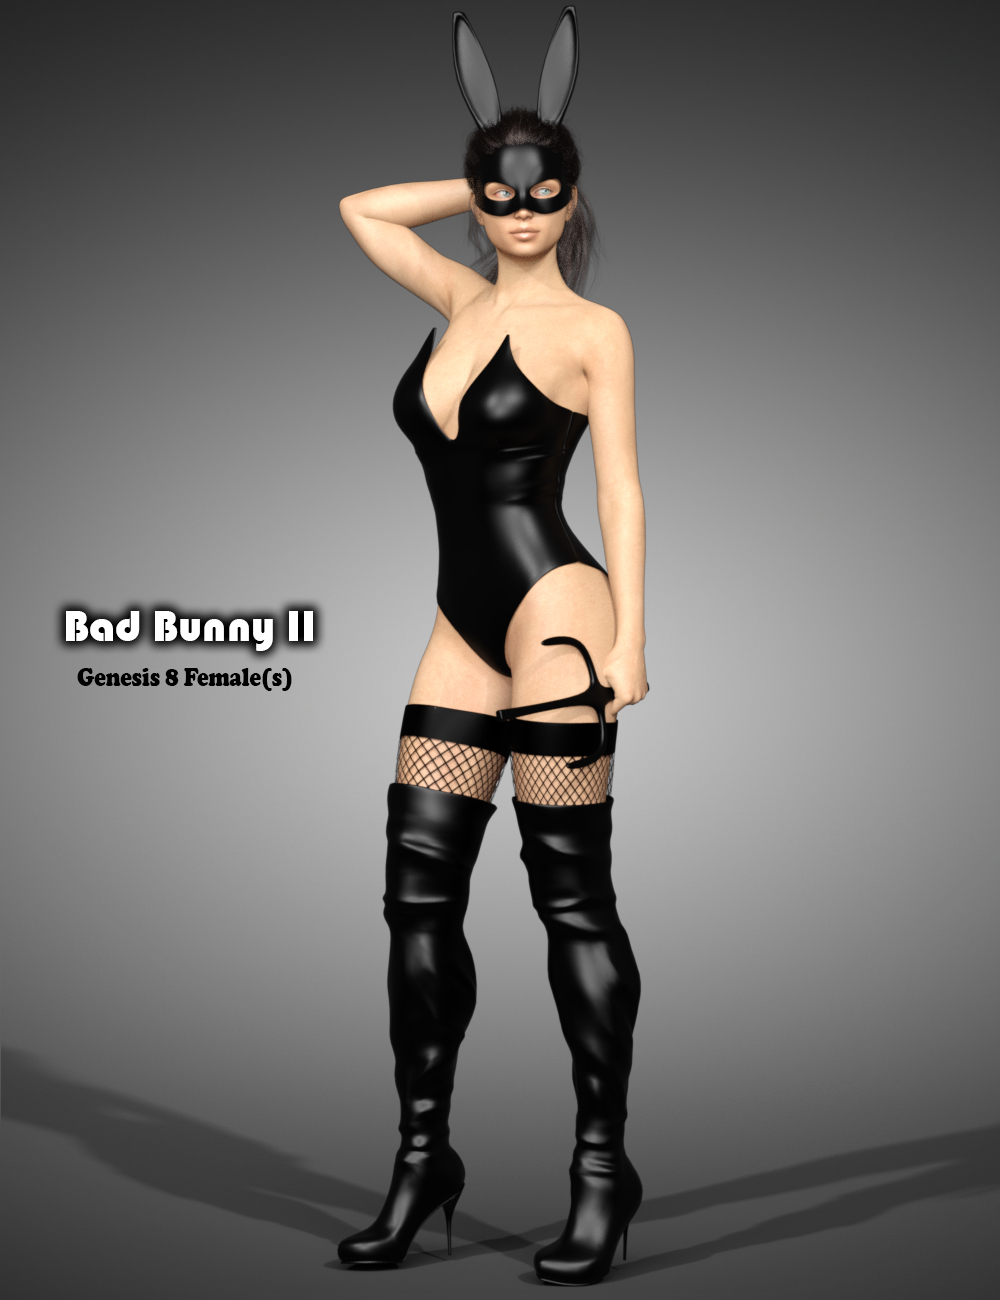 Bad Bunny II for Genesis 8 Female(s) by: B-Rock, 3D Models by Daz 3D